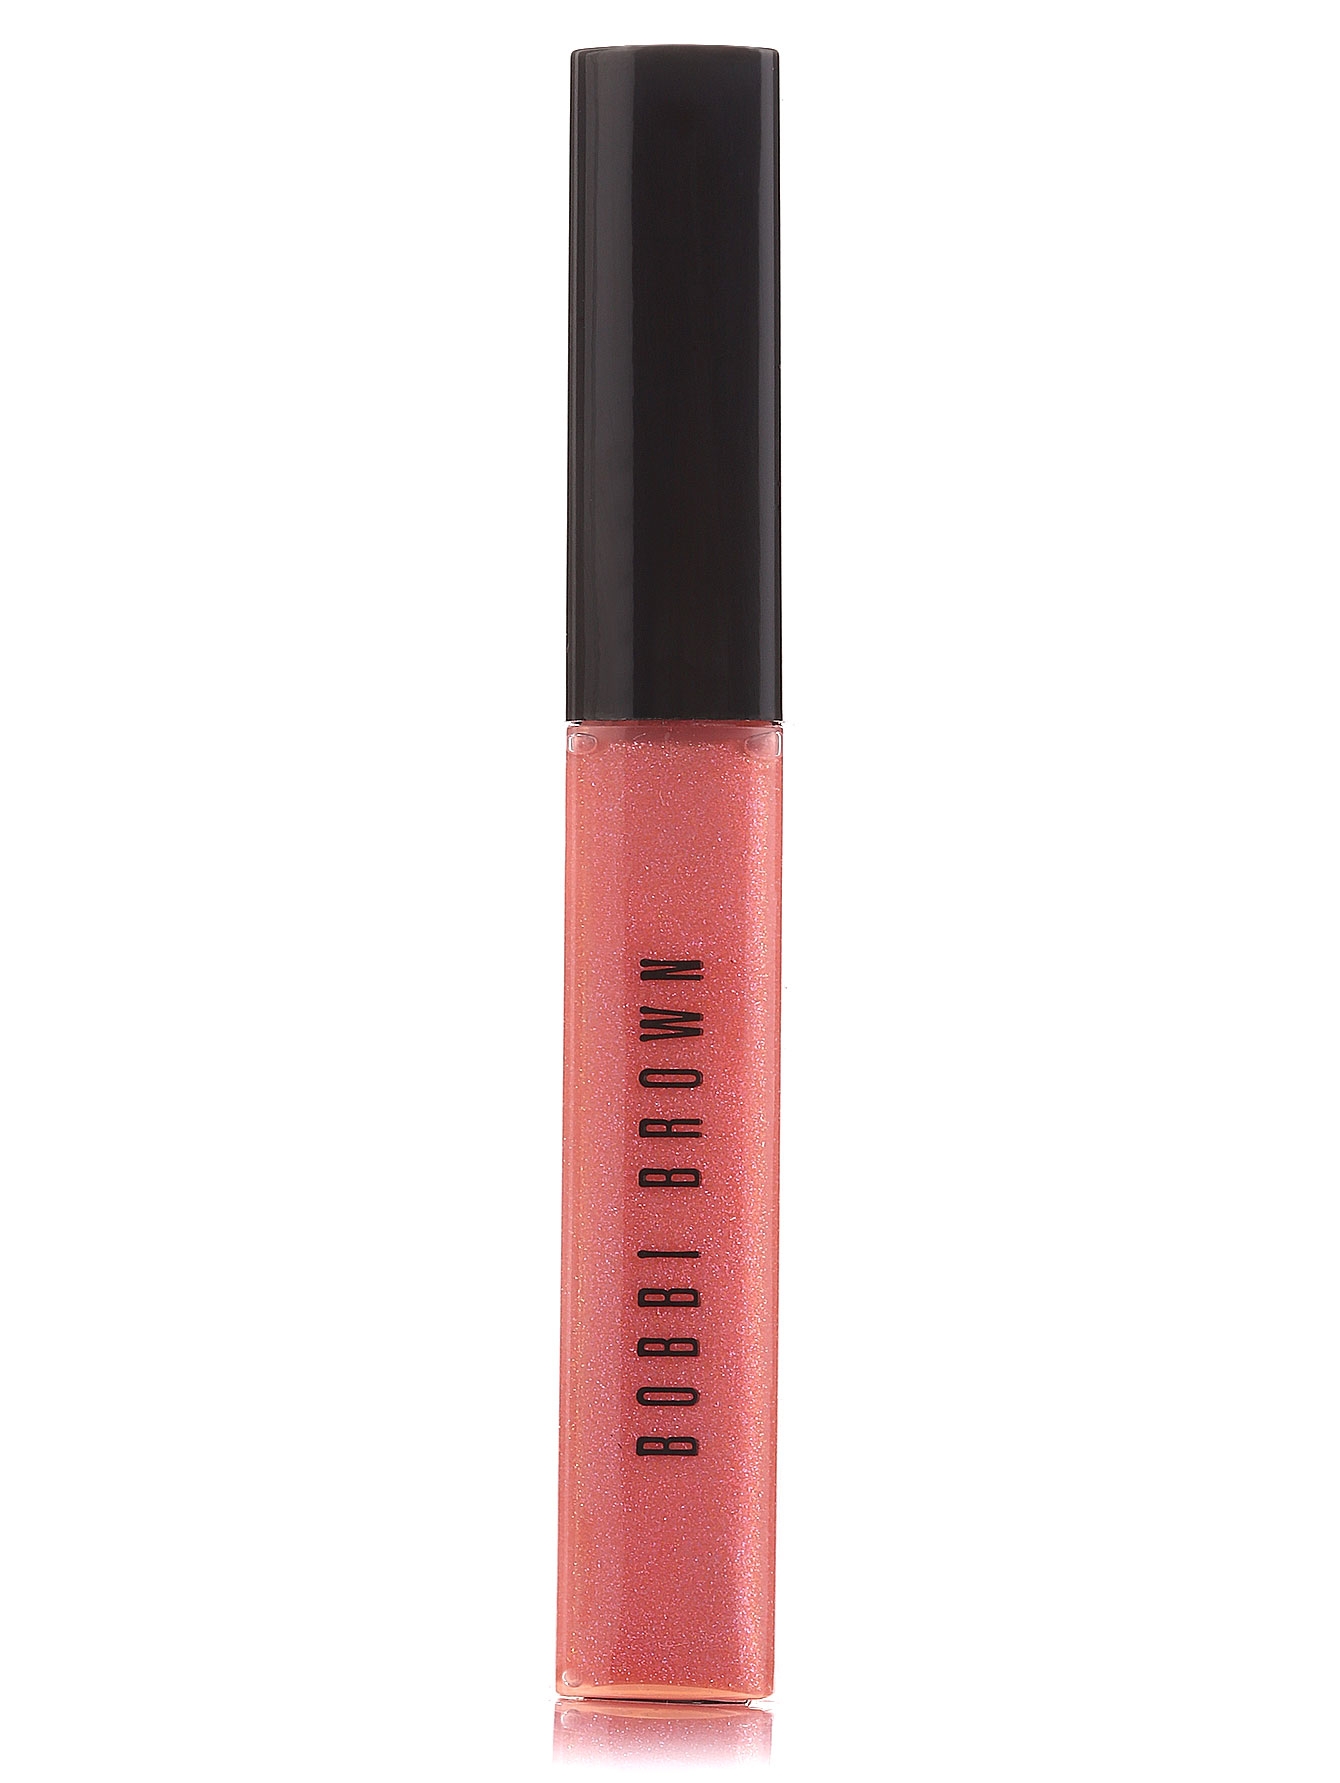  Блеск для губ - Pink Sequin, Lip Gloss, 7ml - Общий вид